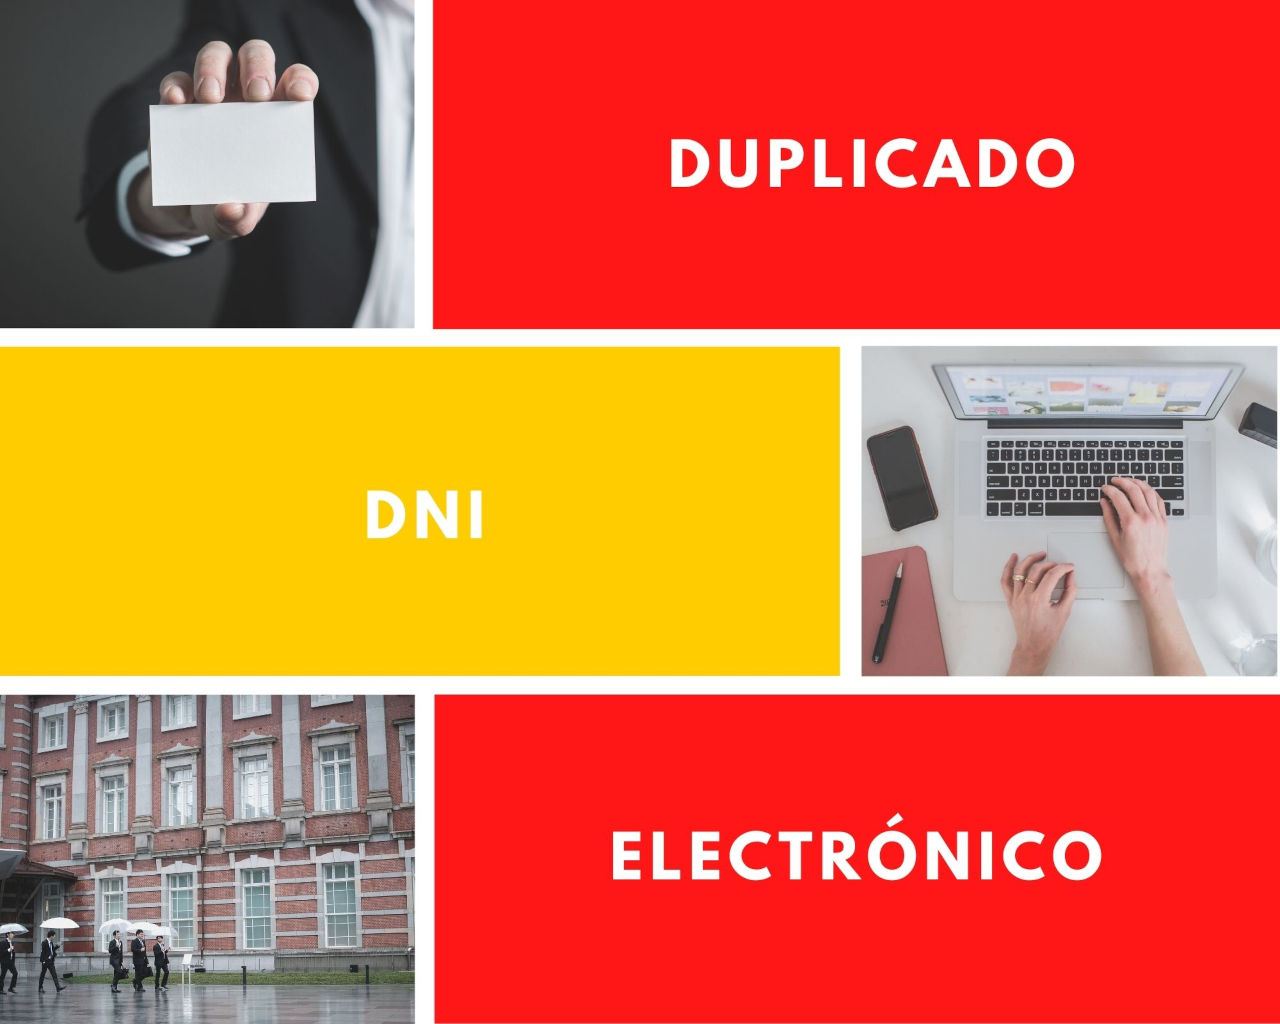 Distintas imágenes sobre un fondo con los colores de la bandera española, donde aparece escrito "duplicado DNI electrónico"